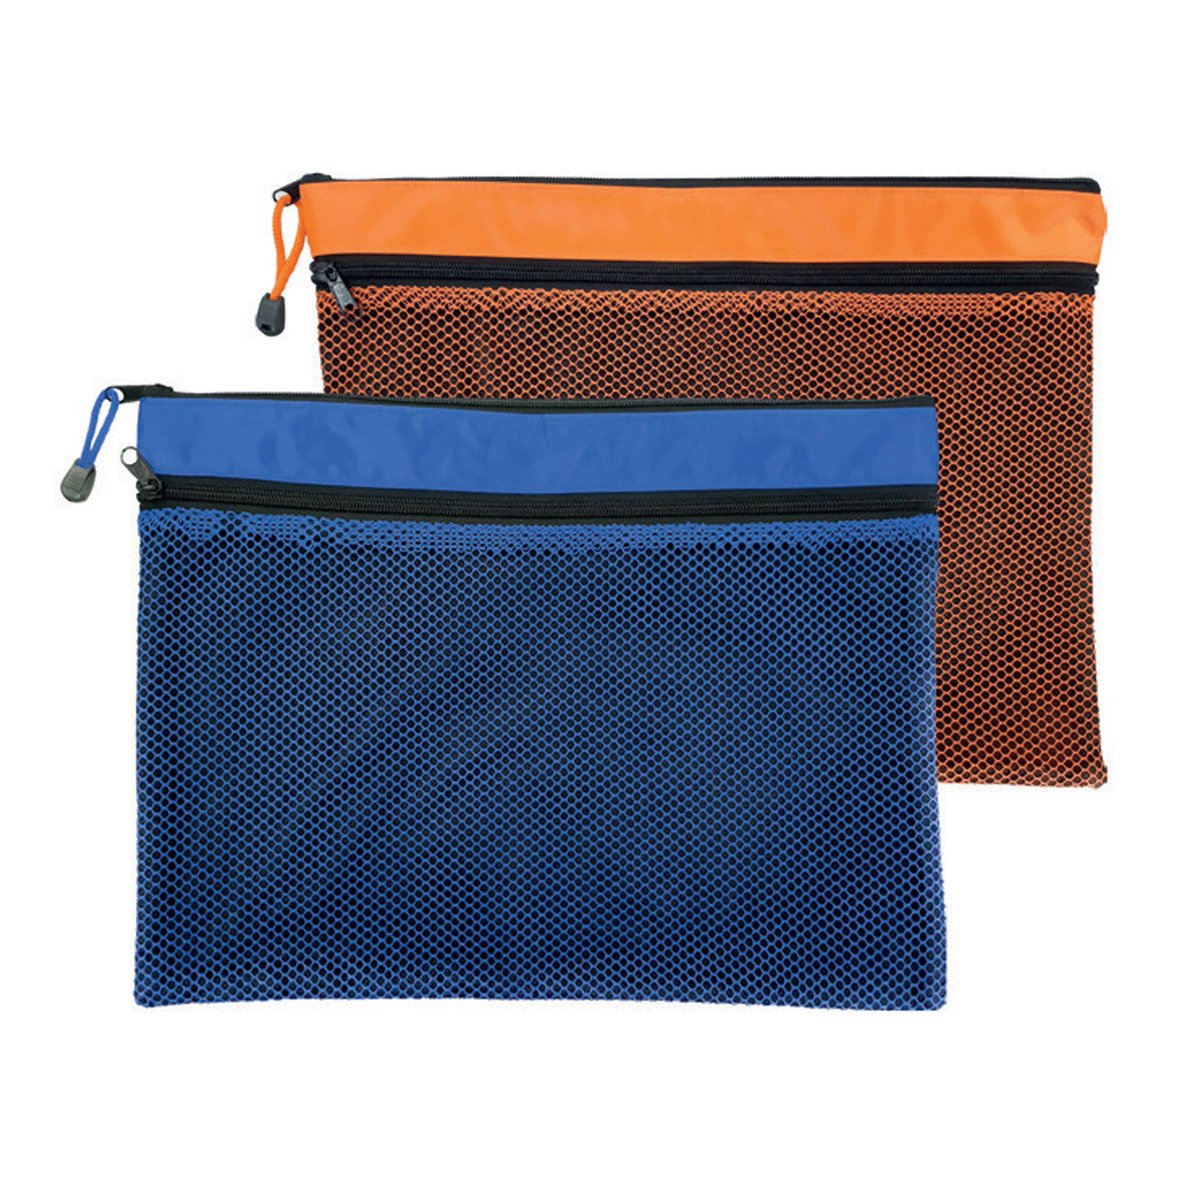 ماكسي حقيبة ذات سحابان 37×28.5 سم 2 حبة MXDZBNB4 متعددة الألوان